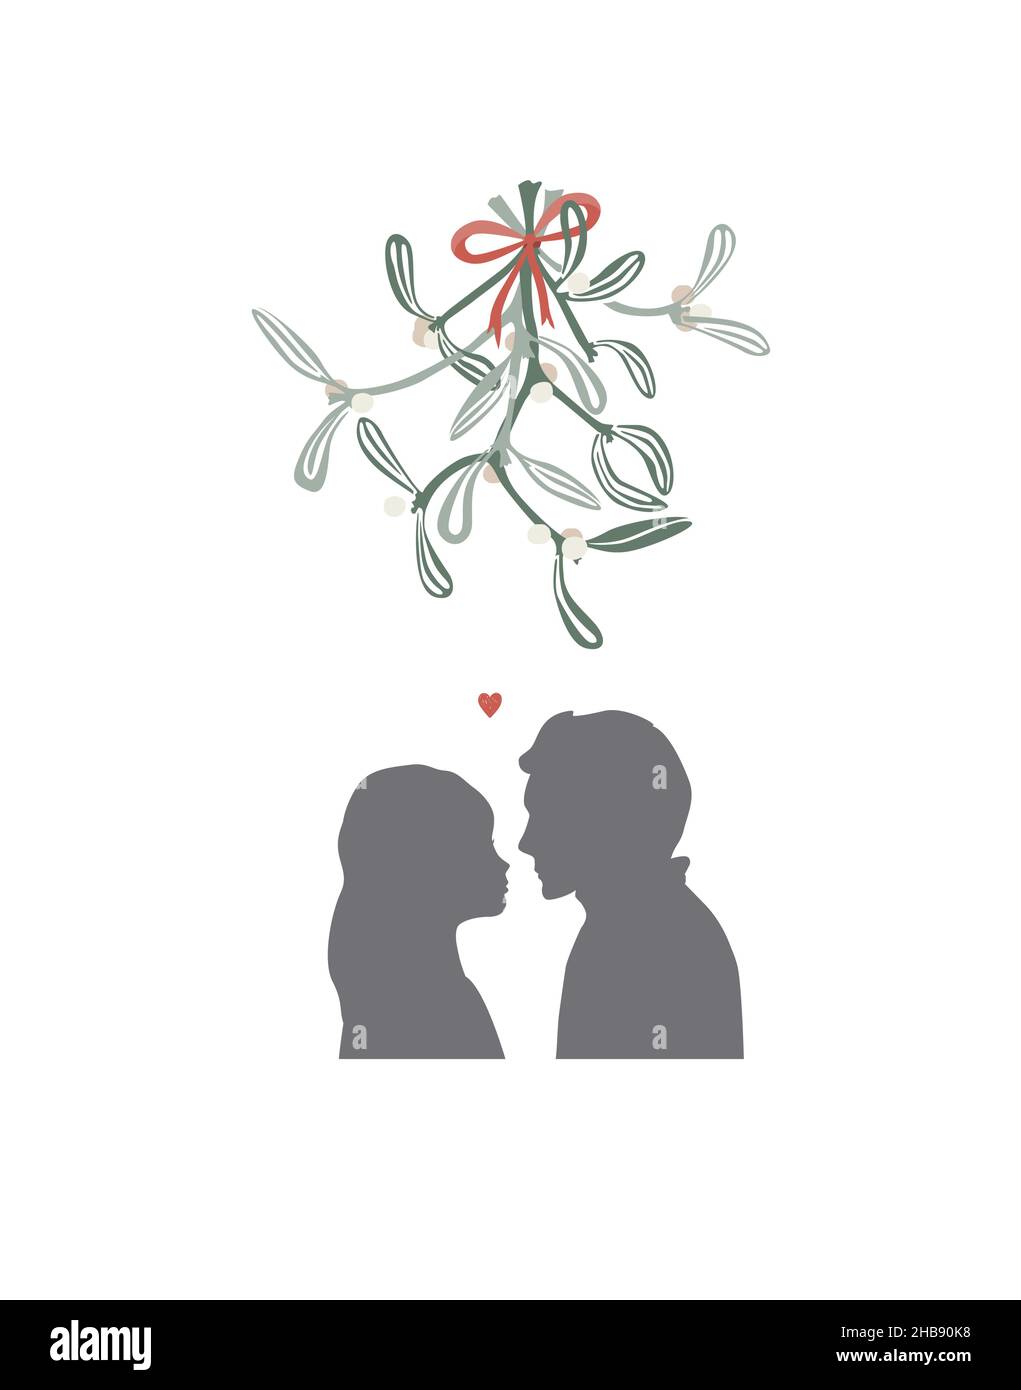 Noël embrassant sous branche de GUI.Le gars et la fille vont embrasser.Un premier baiser doux.Relations, amour, date, amour, affection,les adolescents adorent Illustration de Vecteur